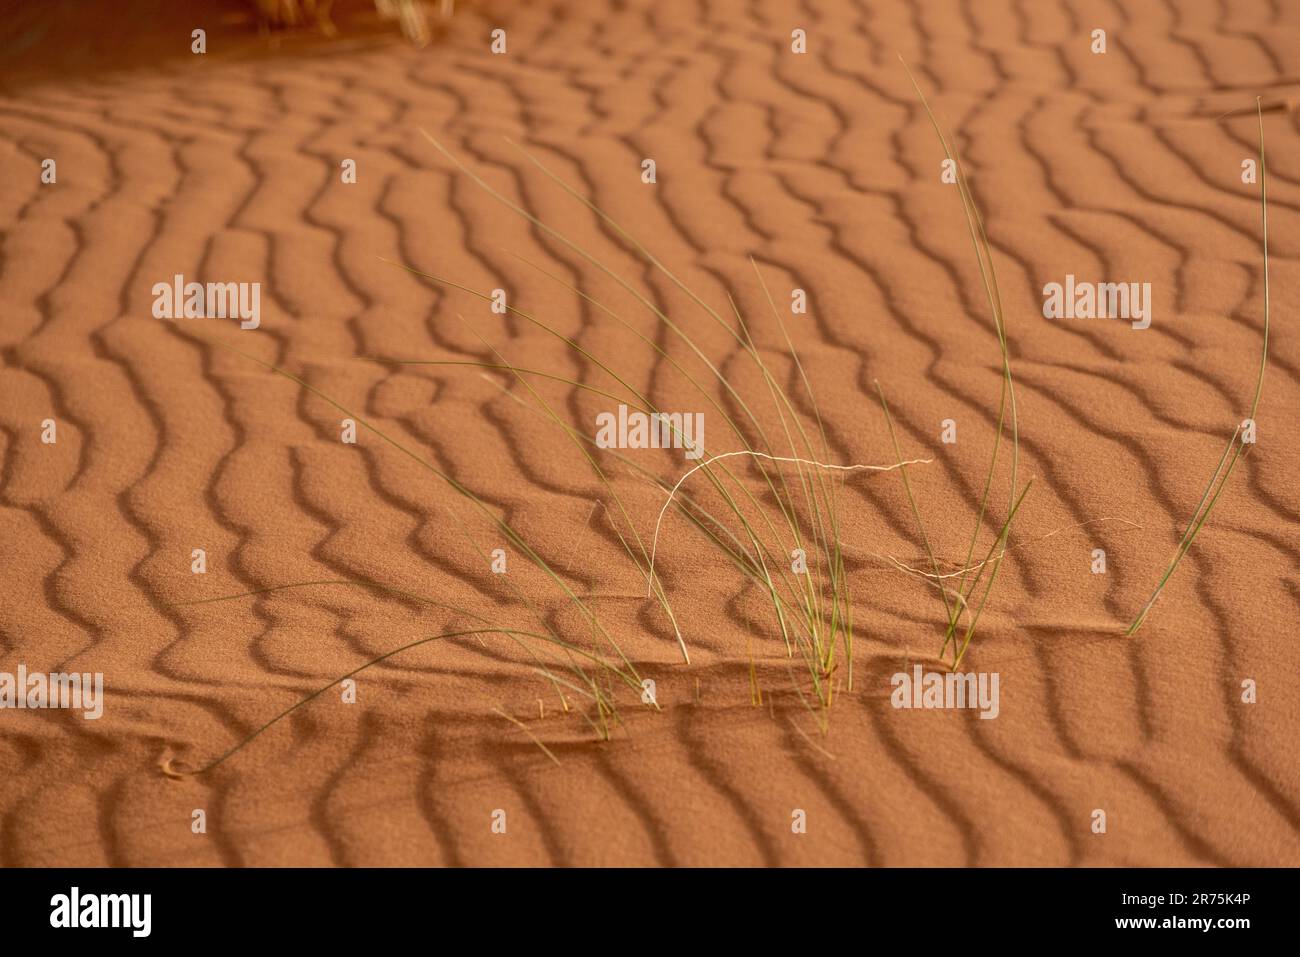 Motif de sable pittoresque sur une dune du désert, tiré du vent, Maroc Banque D'Images